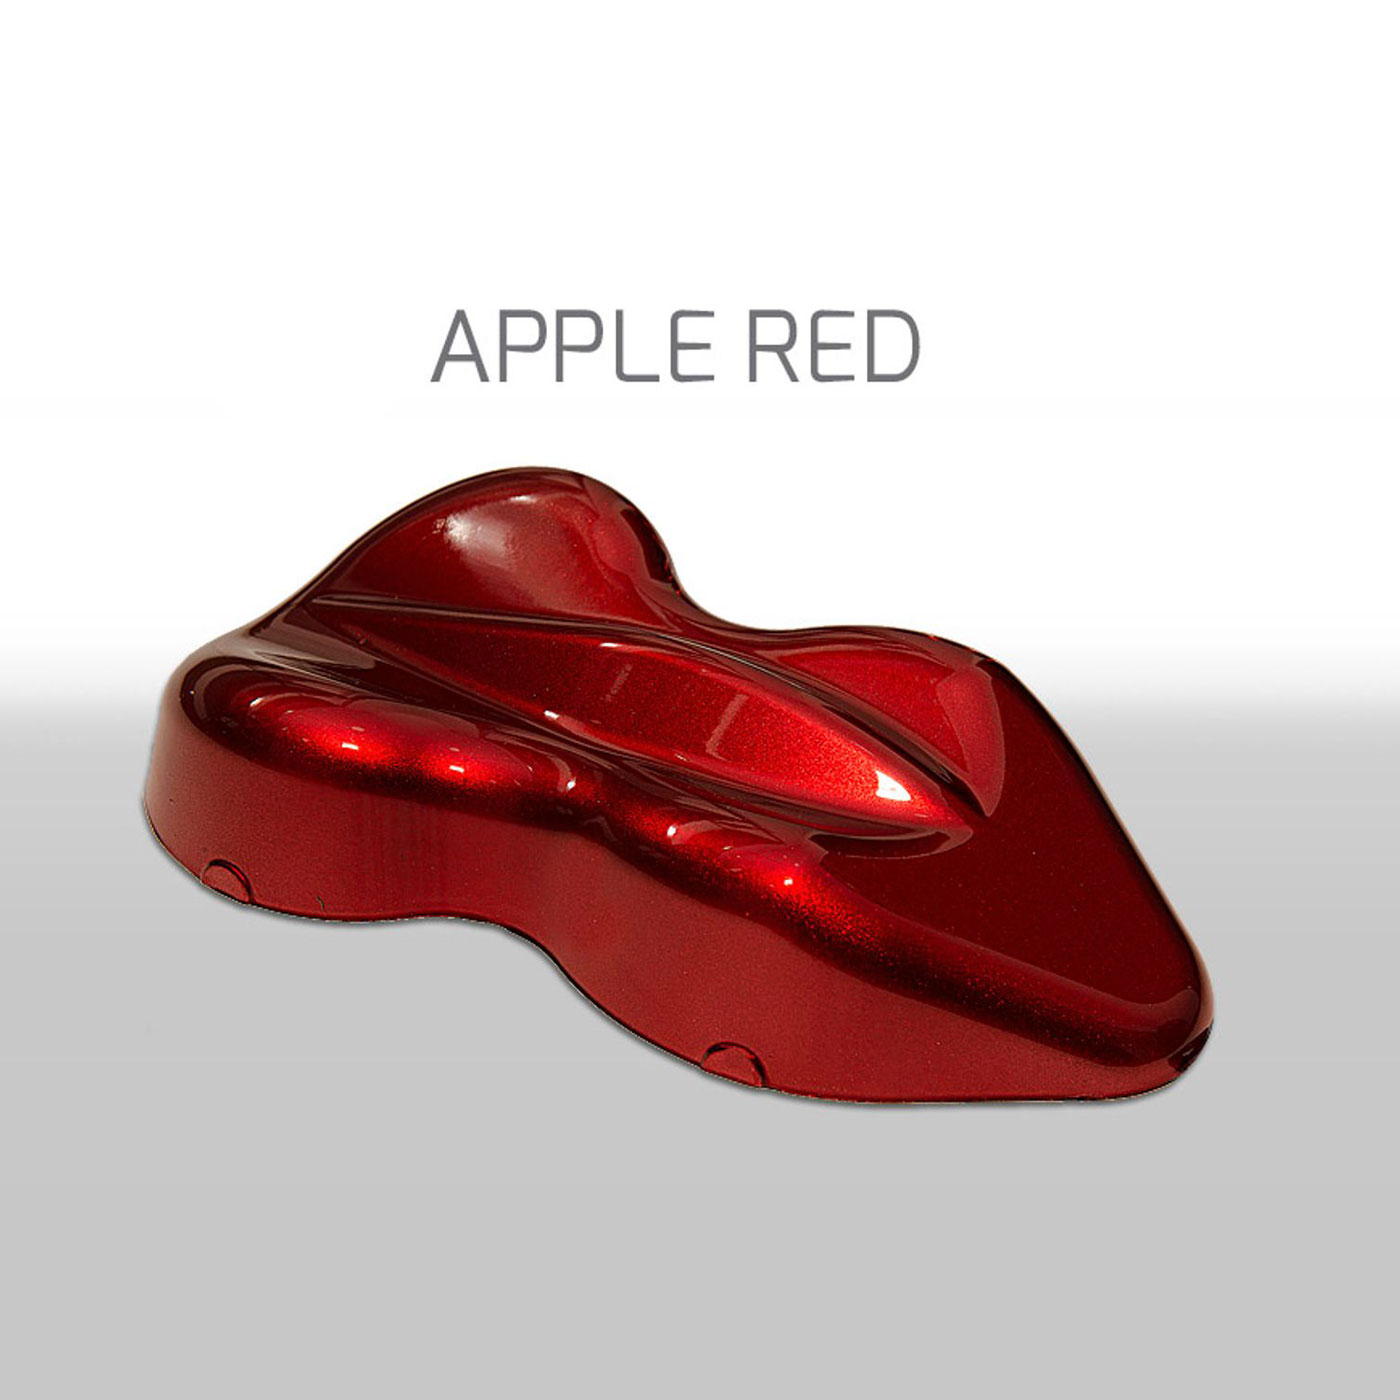 150ml Tinta Kandy Apple Red